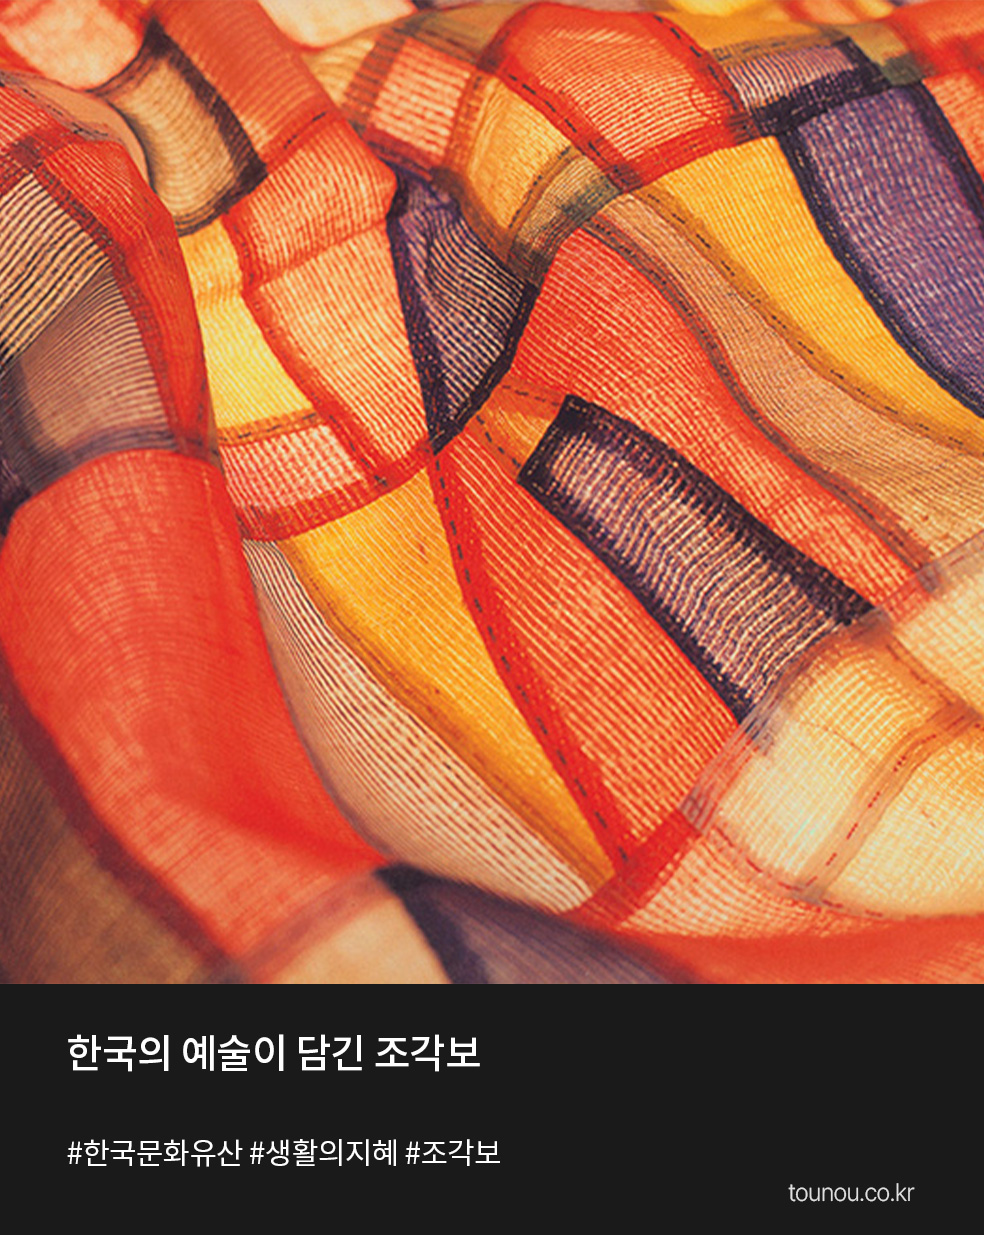 예술이 있는 하루 한국의 예술이 담긴 조각보